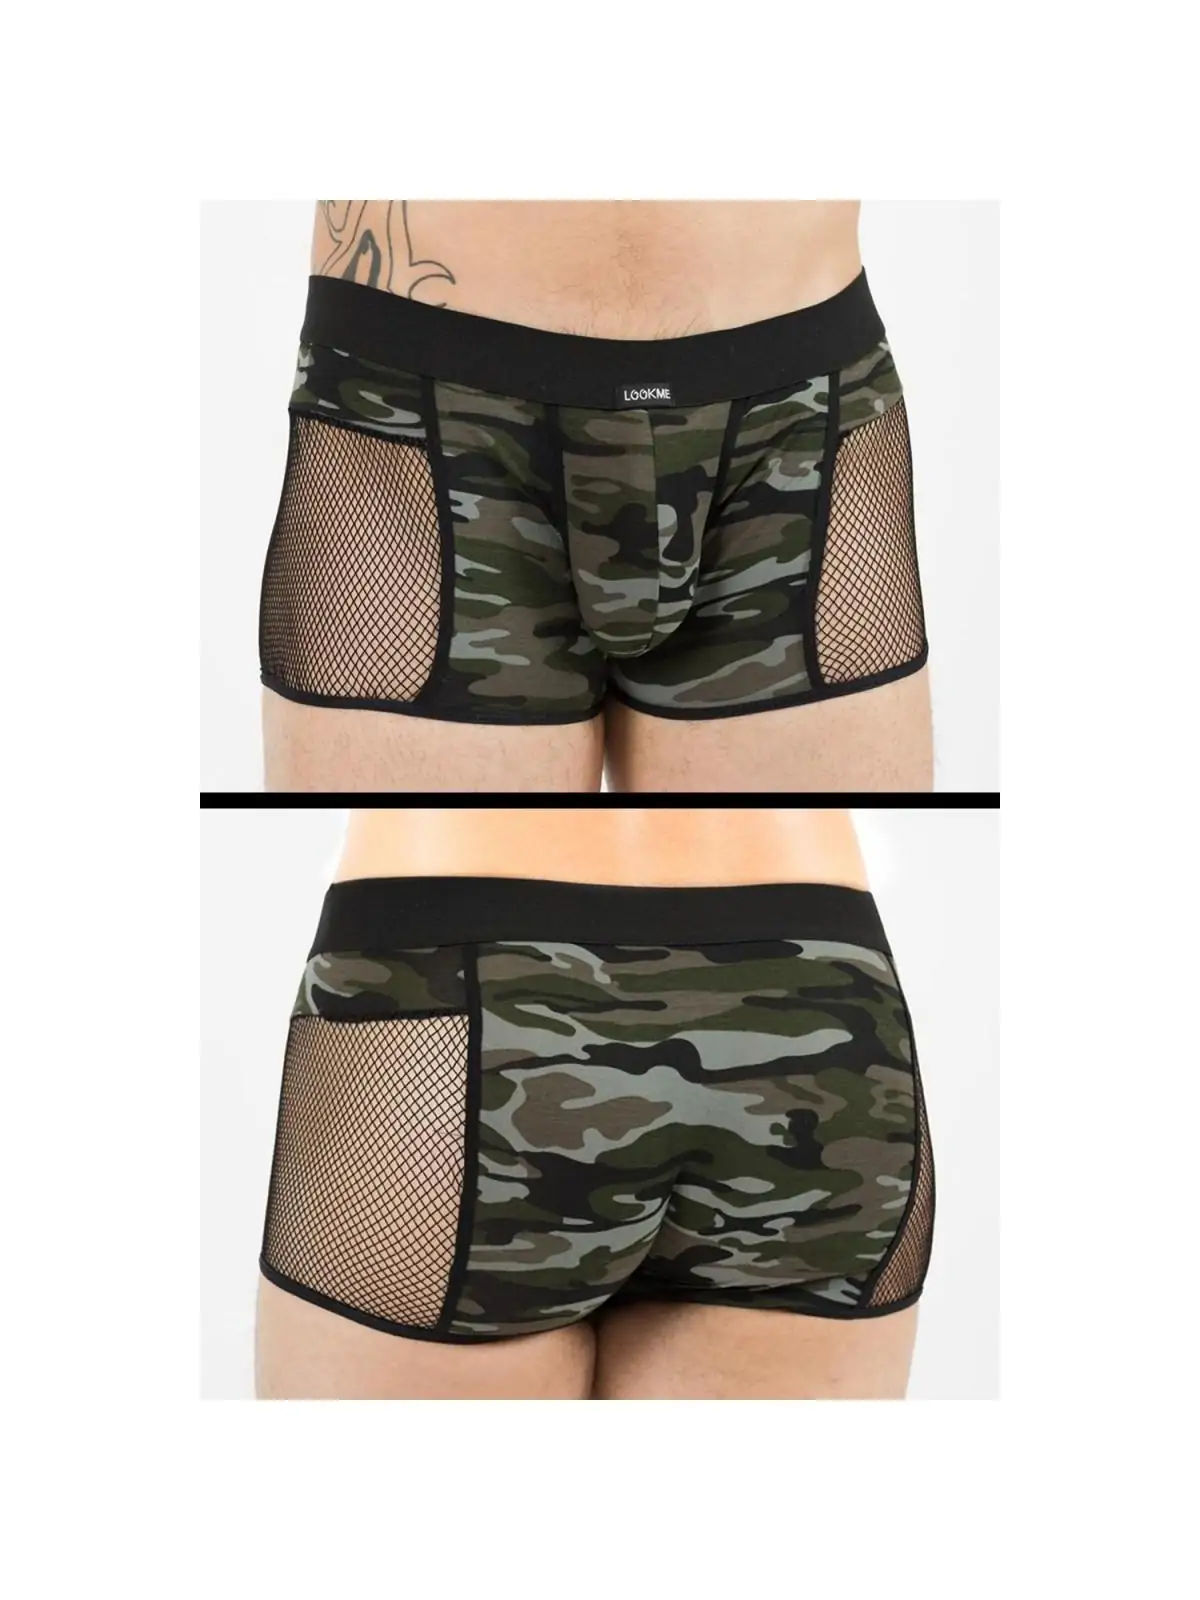 Camouflage Boxer Short Military 58-67 von Look Me kaufen - Fesselliebe